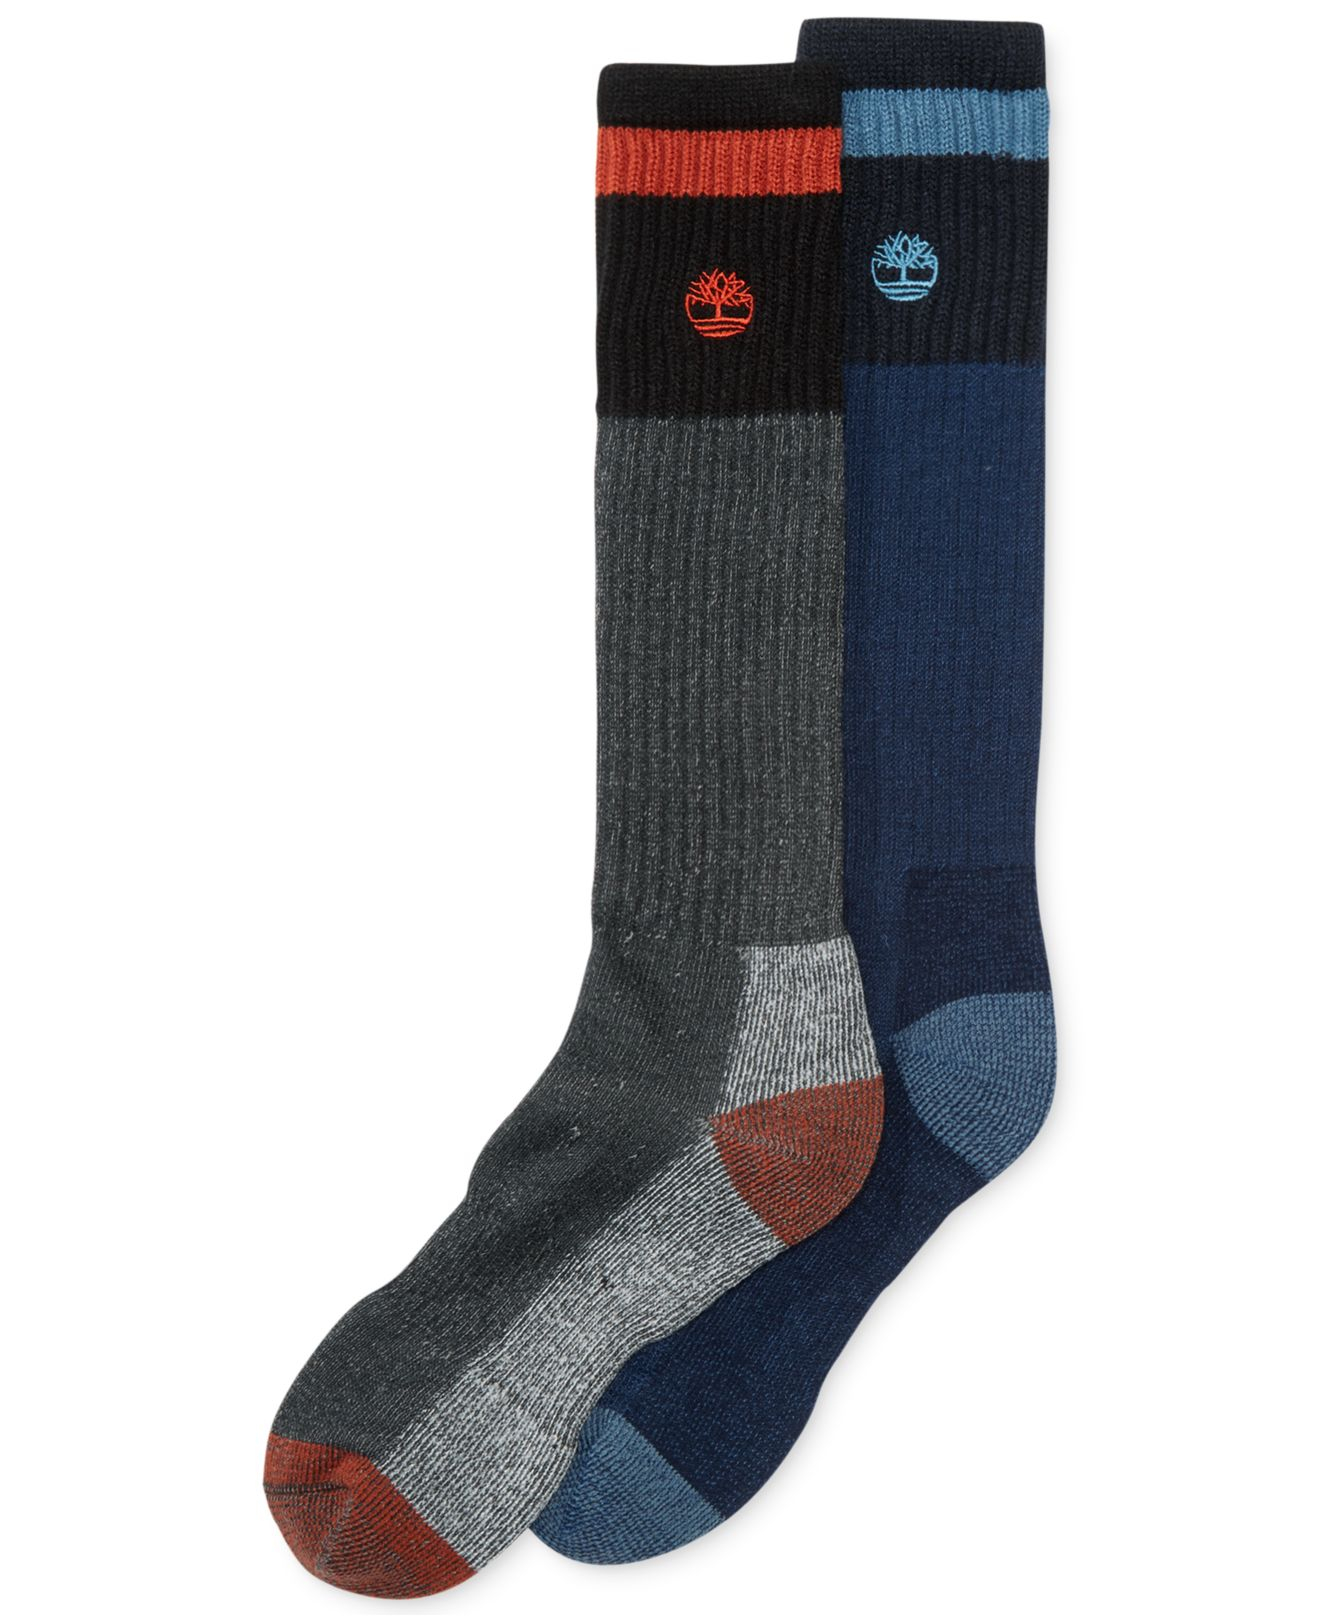 Lyst - Timberland Men's Merino Wool Boot Socks 2-pack in Gray for Men